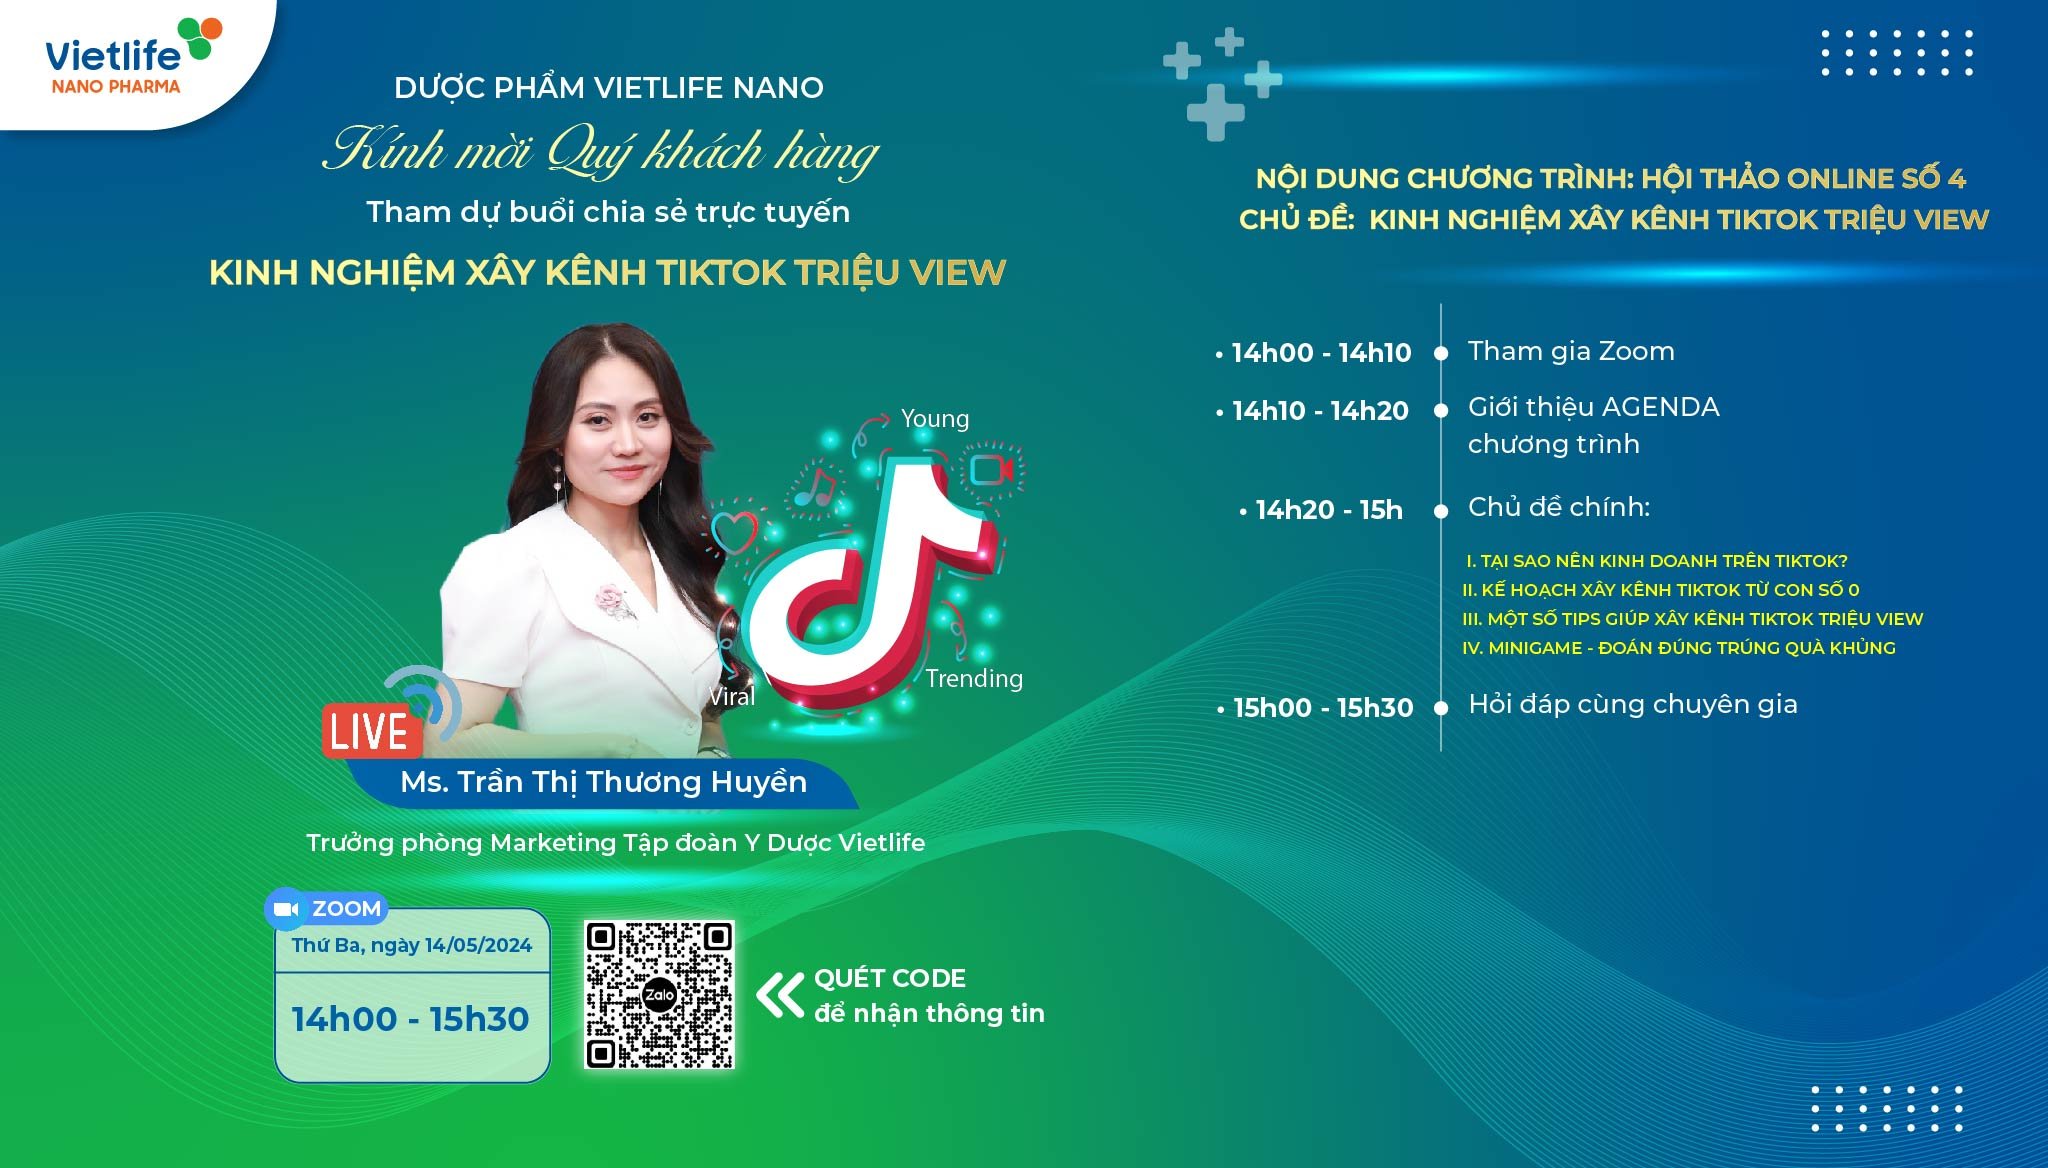 Vietlife Nano Pharma tổ chức hội thảo online chủ đề “Kinh nghiệm xây kênh Tiktok triệu view